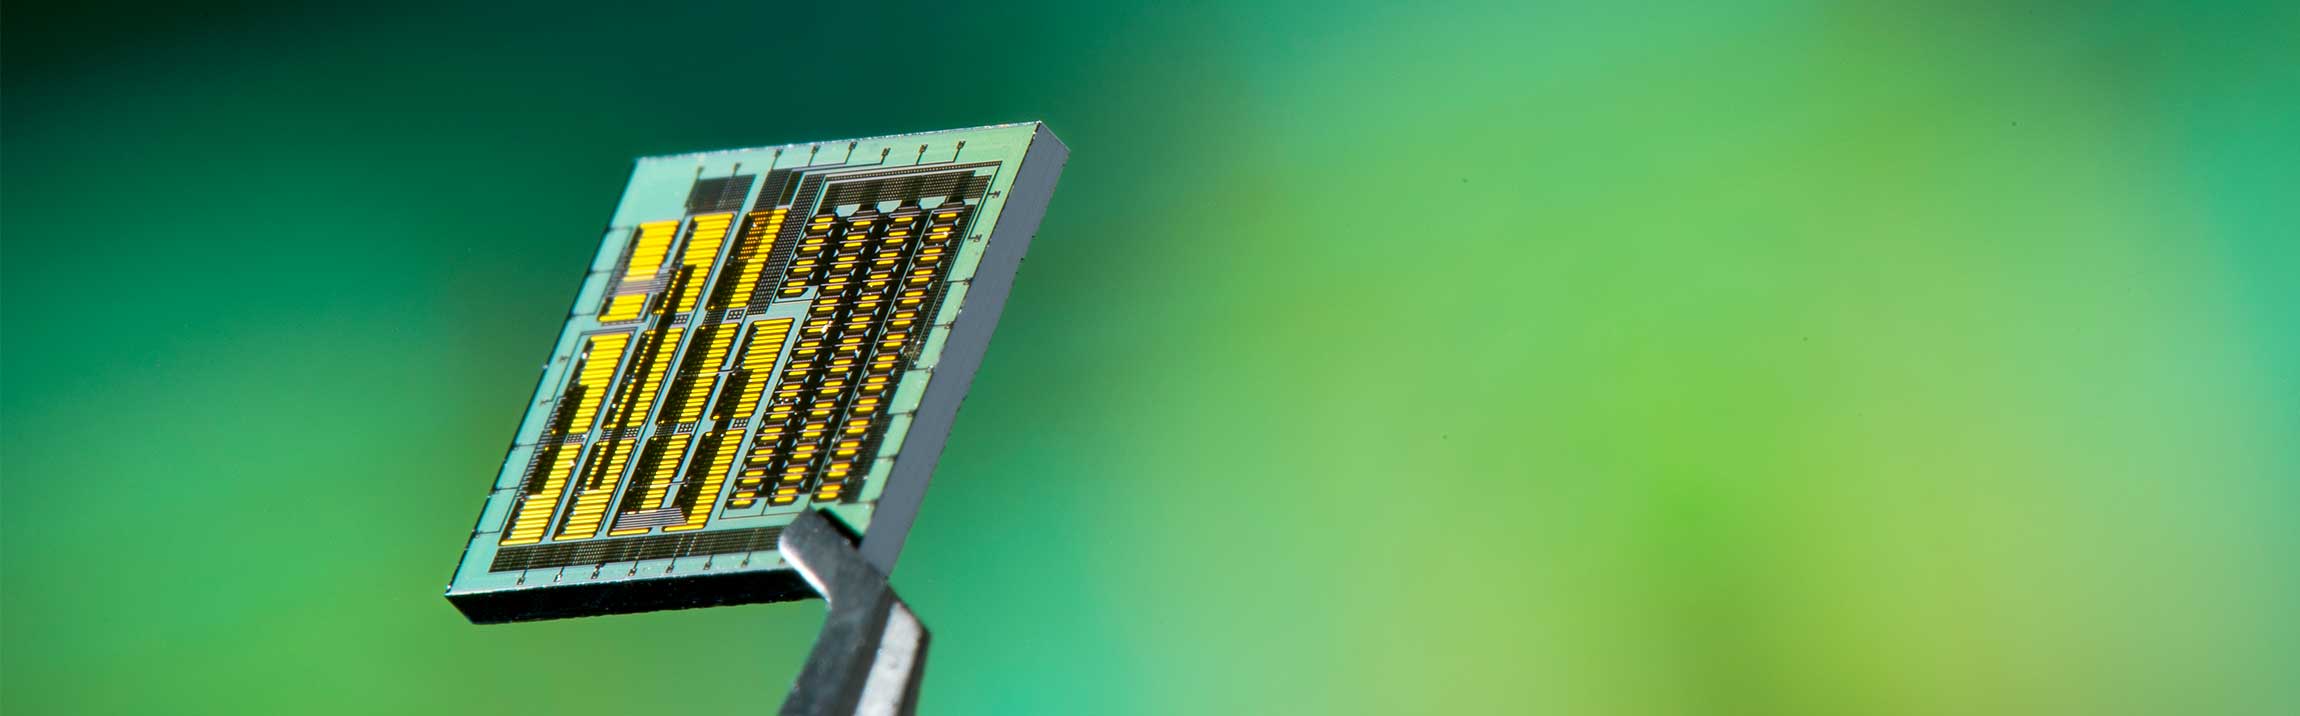 Closeup of an integrated circuit